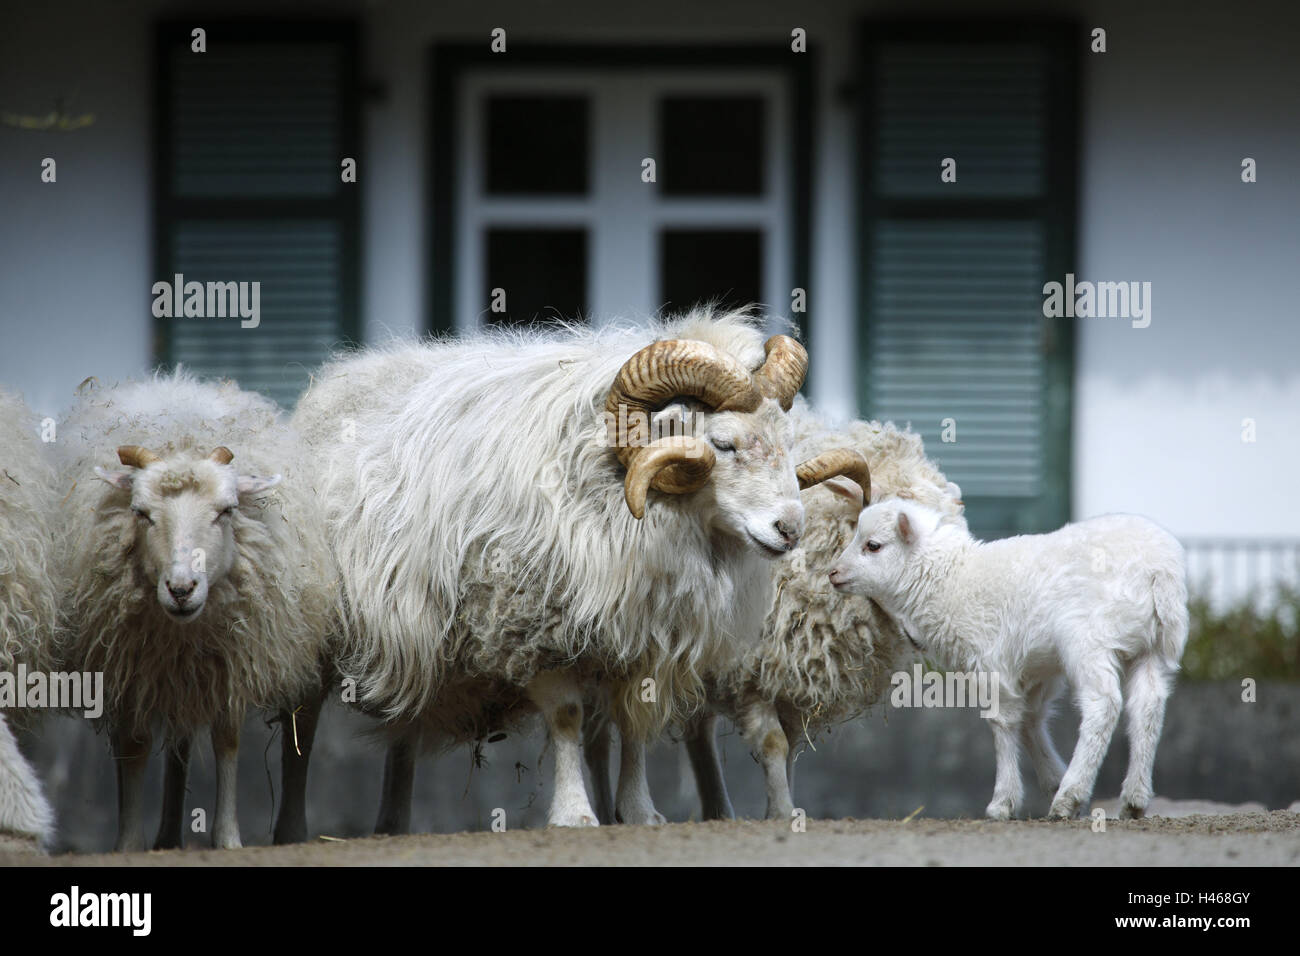 Skudden, pecore, Ovis aries, Germania, moor pecore, gruppo, ram, capra, corna, capra, agnello, giovane animale, robusta, selvaggi-ungulato, ovini domestici, beneficio razze animali, Foto Stock